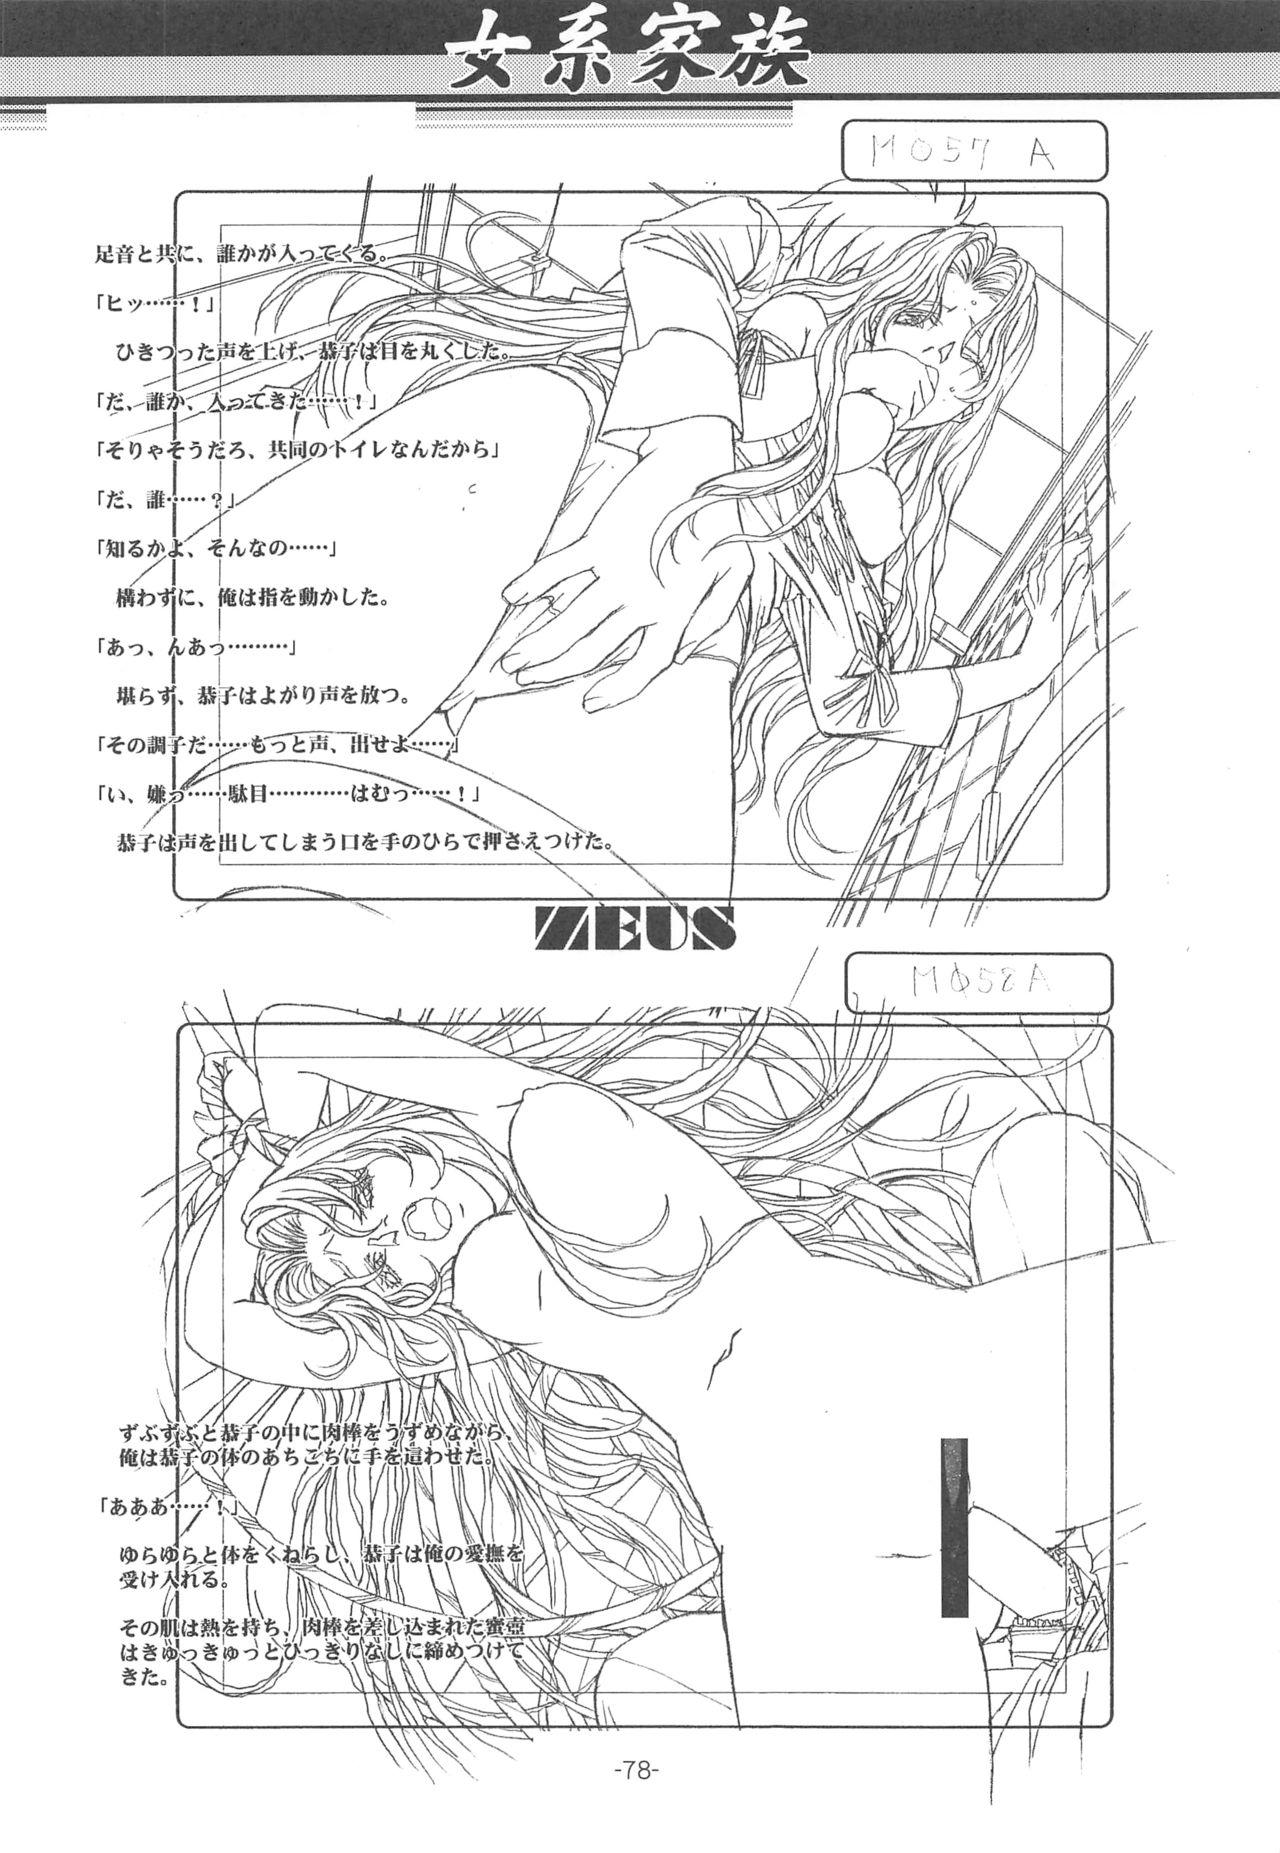 Otonano Do-wa Vol. 14 & Jokei Kazoku Senga shuu 76